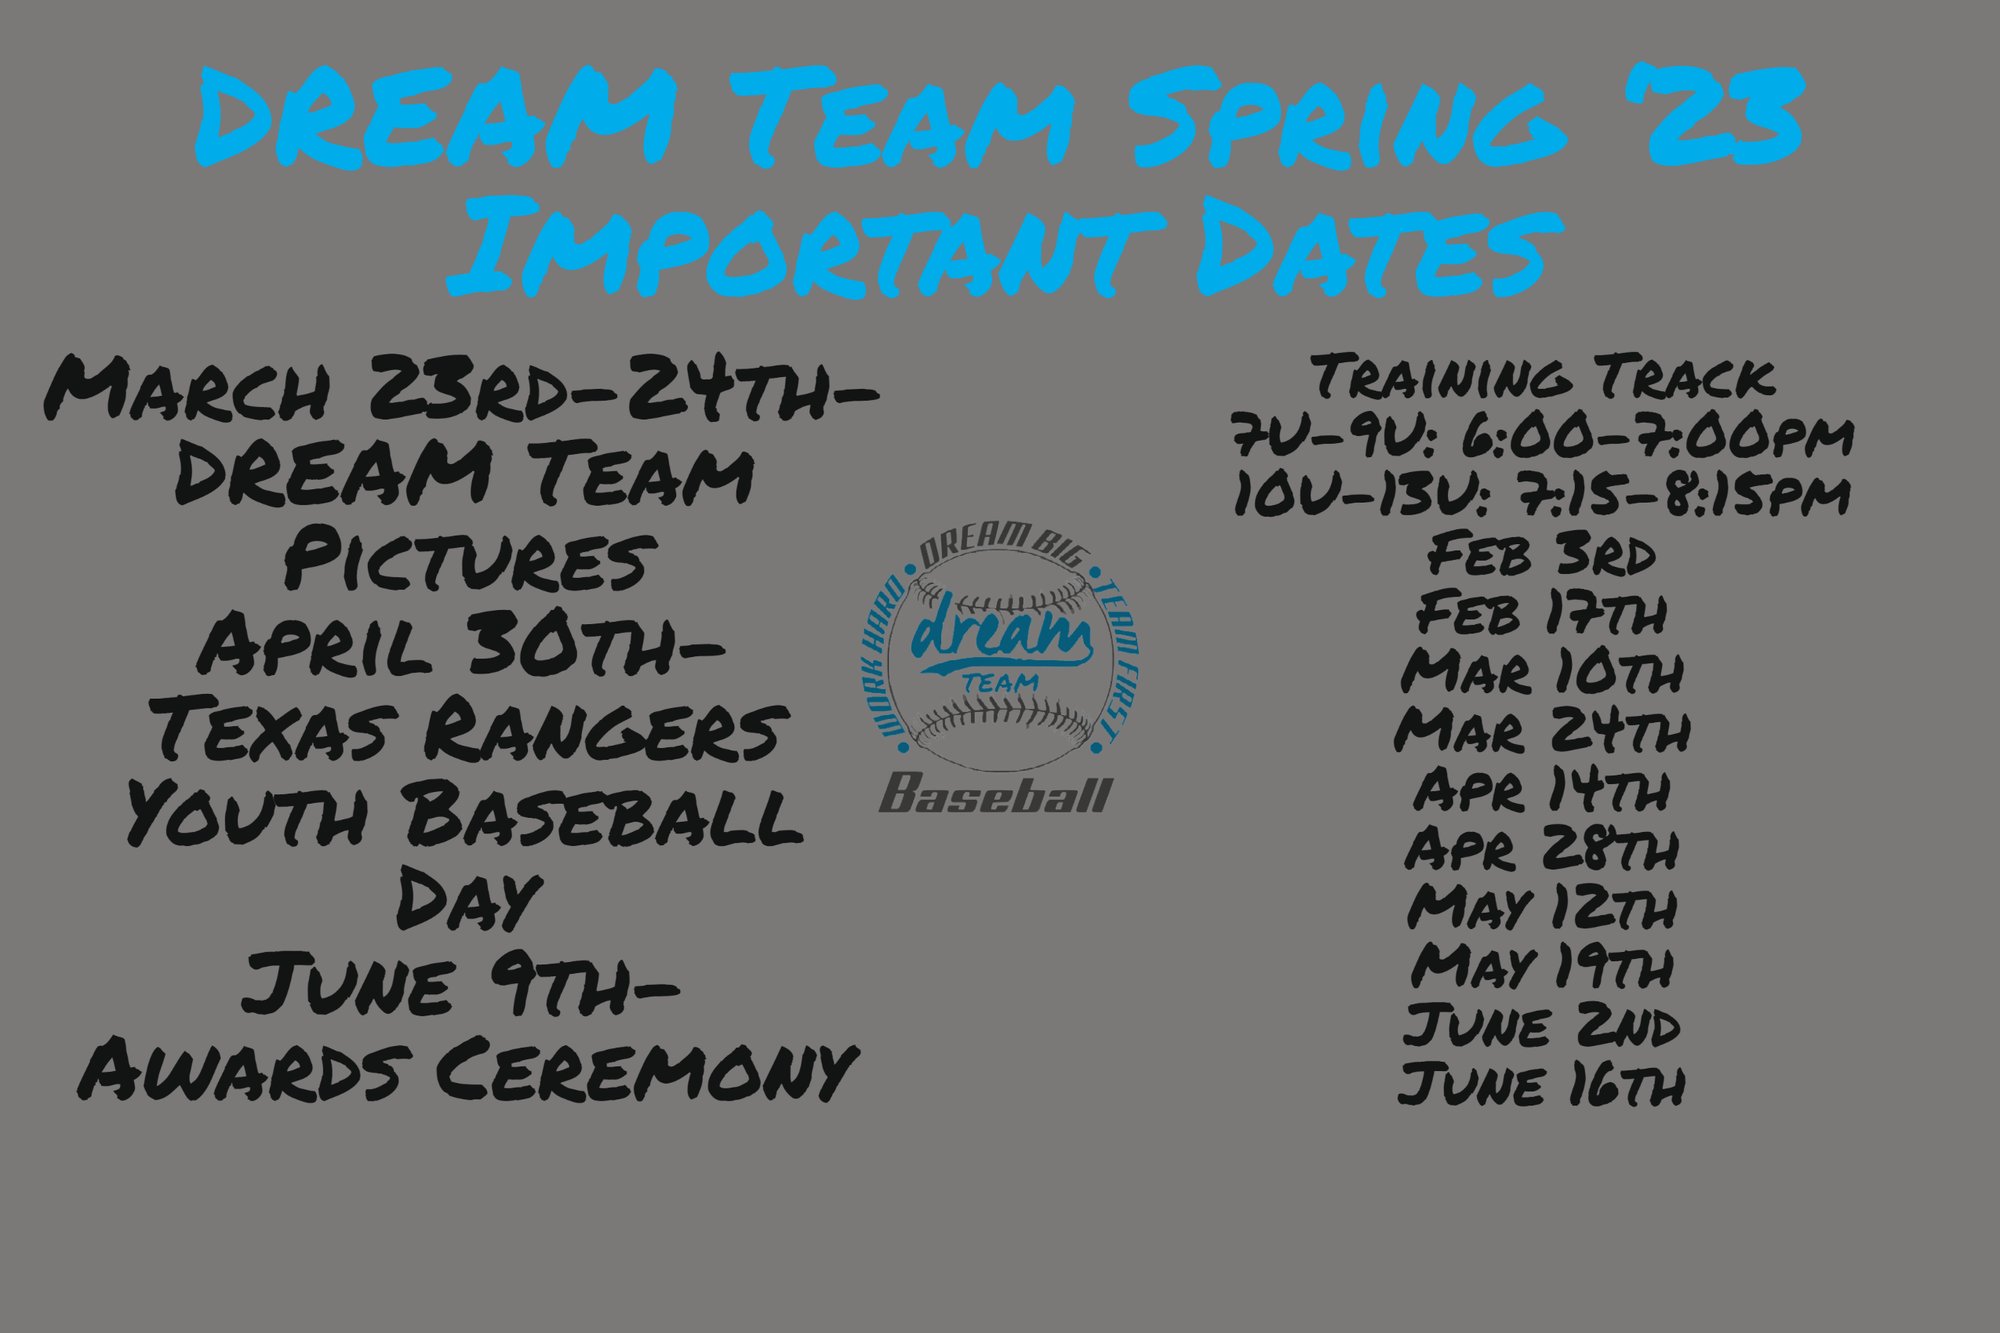 DREAM Team Spring 23 dates-1 (2)